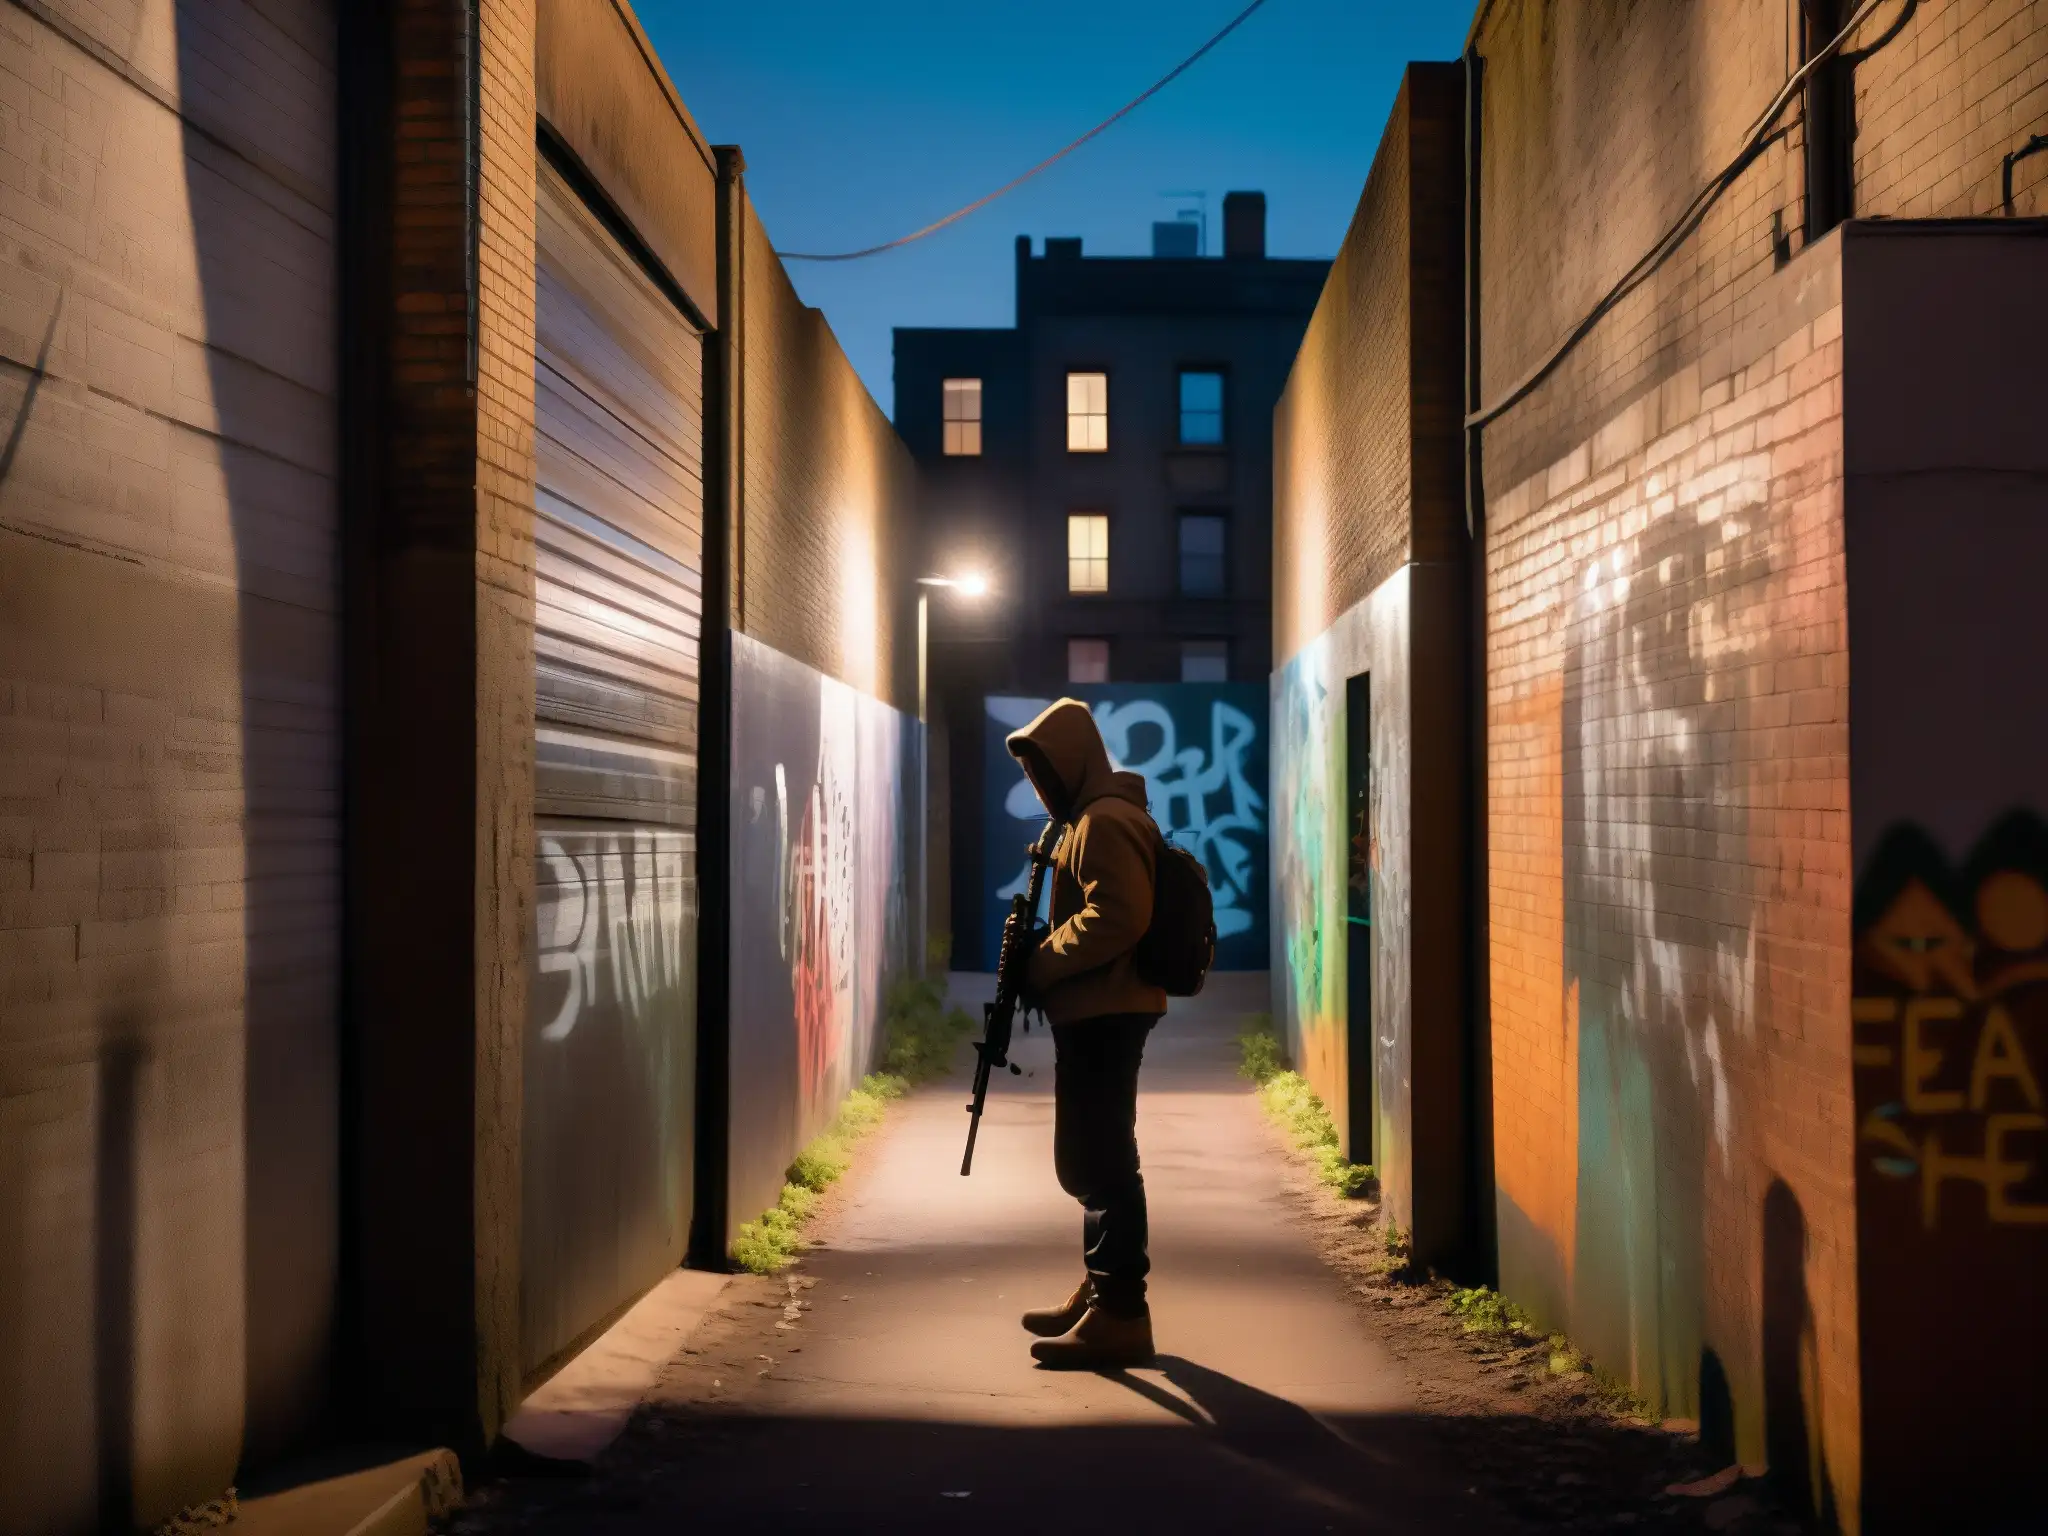 En un callejón oscuro, una figura se agacha con un arma, reflejando el miedo de los mitos urbanos violentos